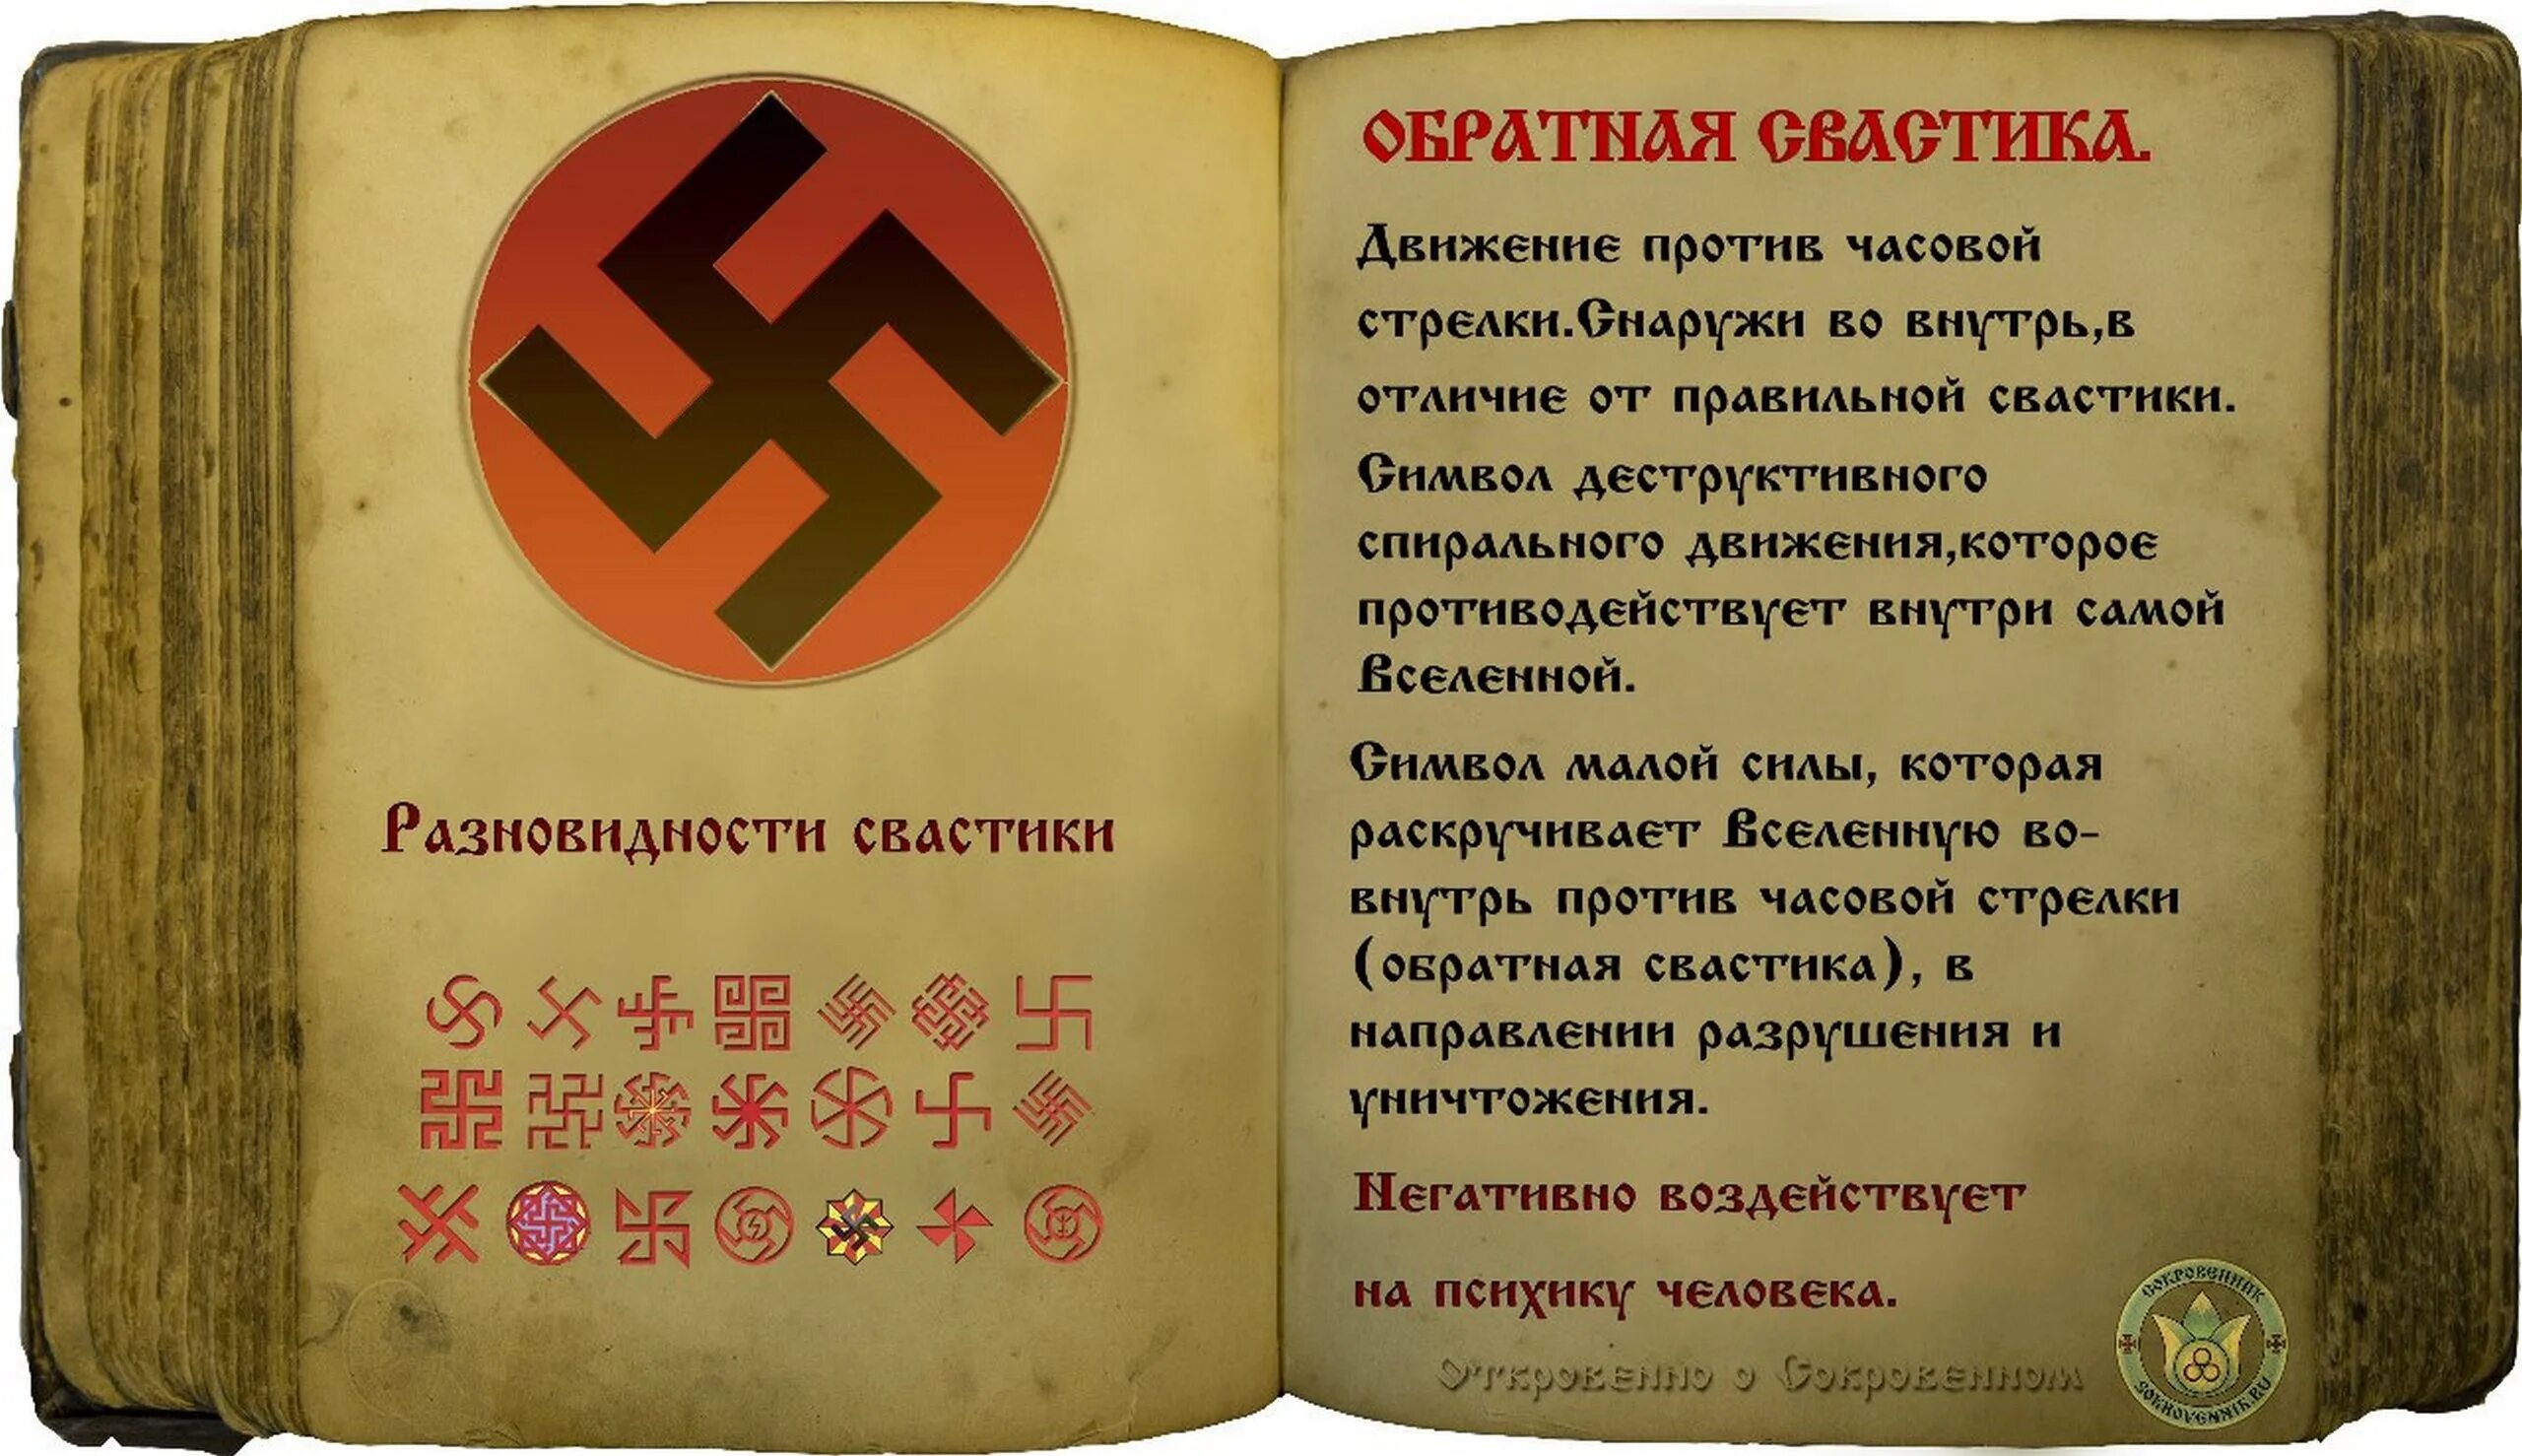 Против часовой пол. Славянские символы. Славянские символы фашистские.